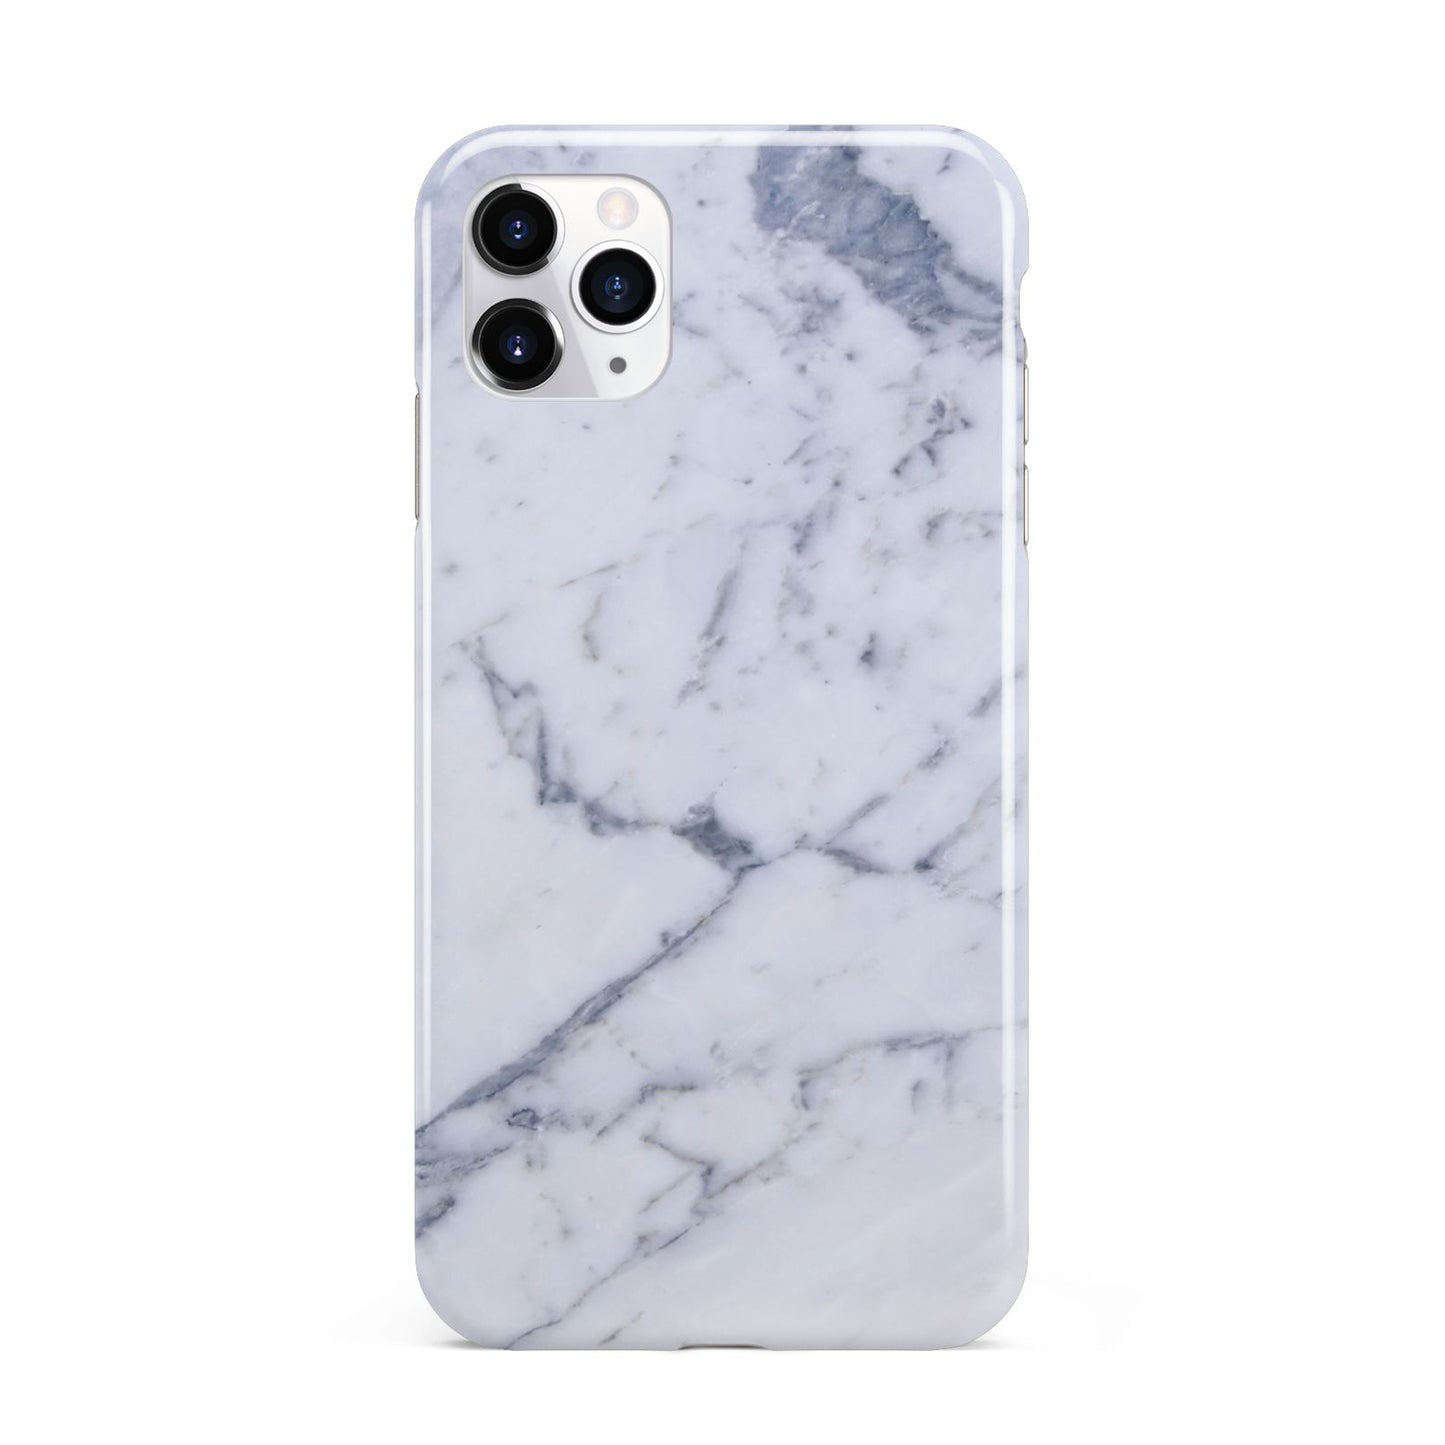 Faux Marble Grey White iPhone 11 Pro Max 3D Tough Case